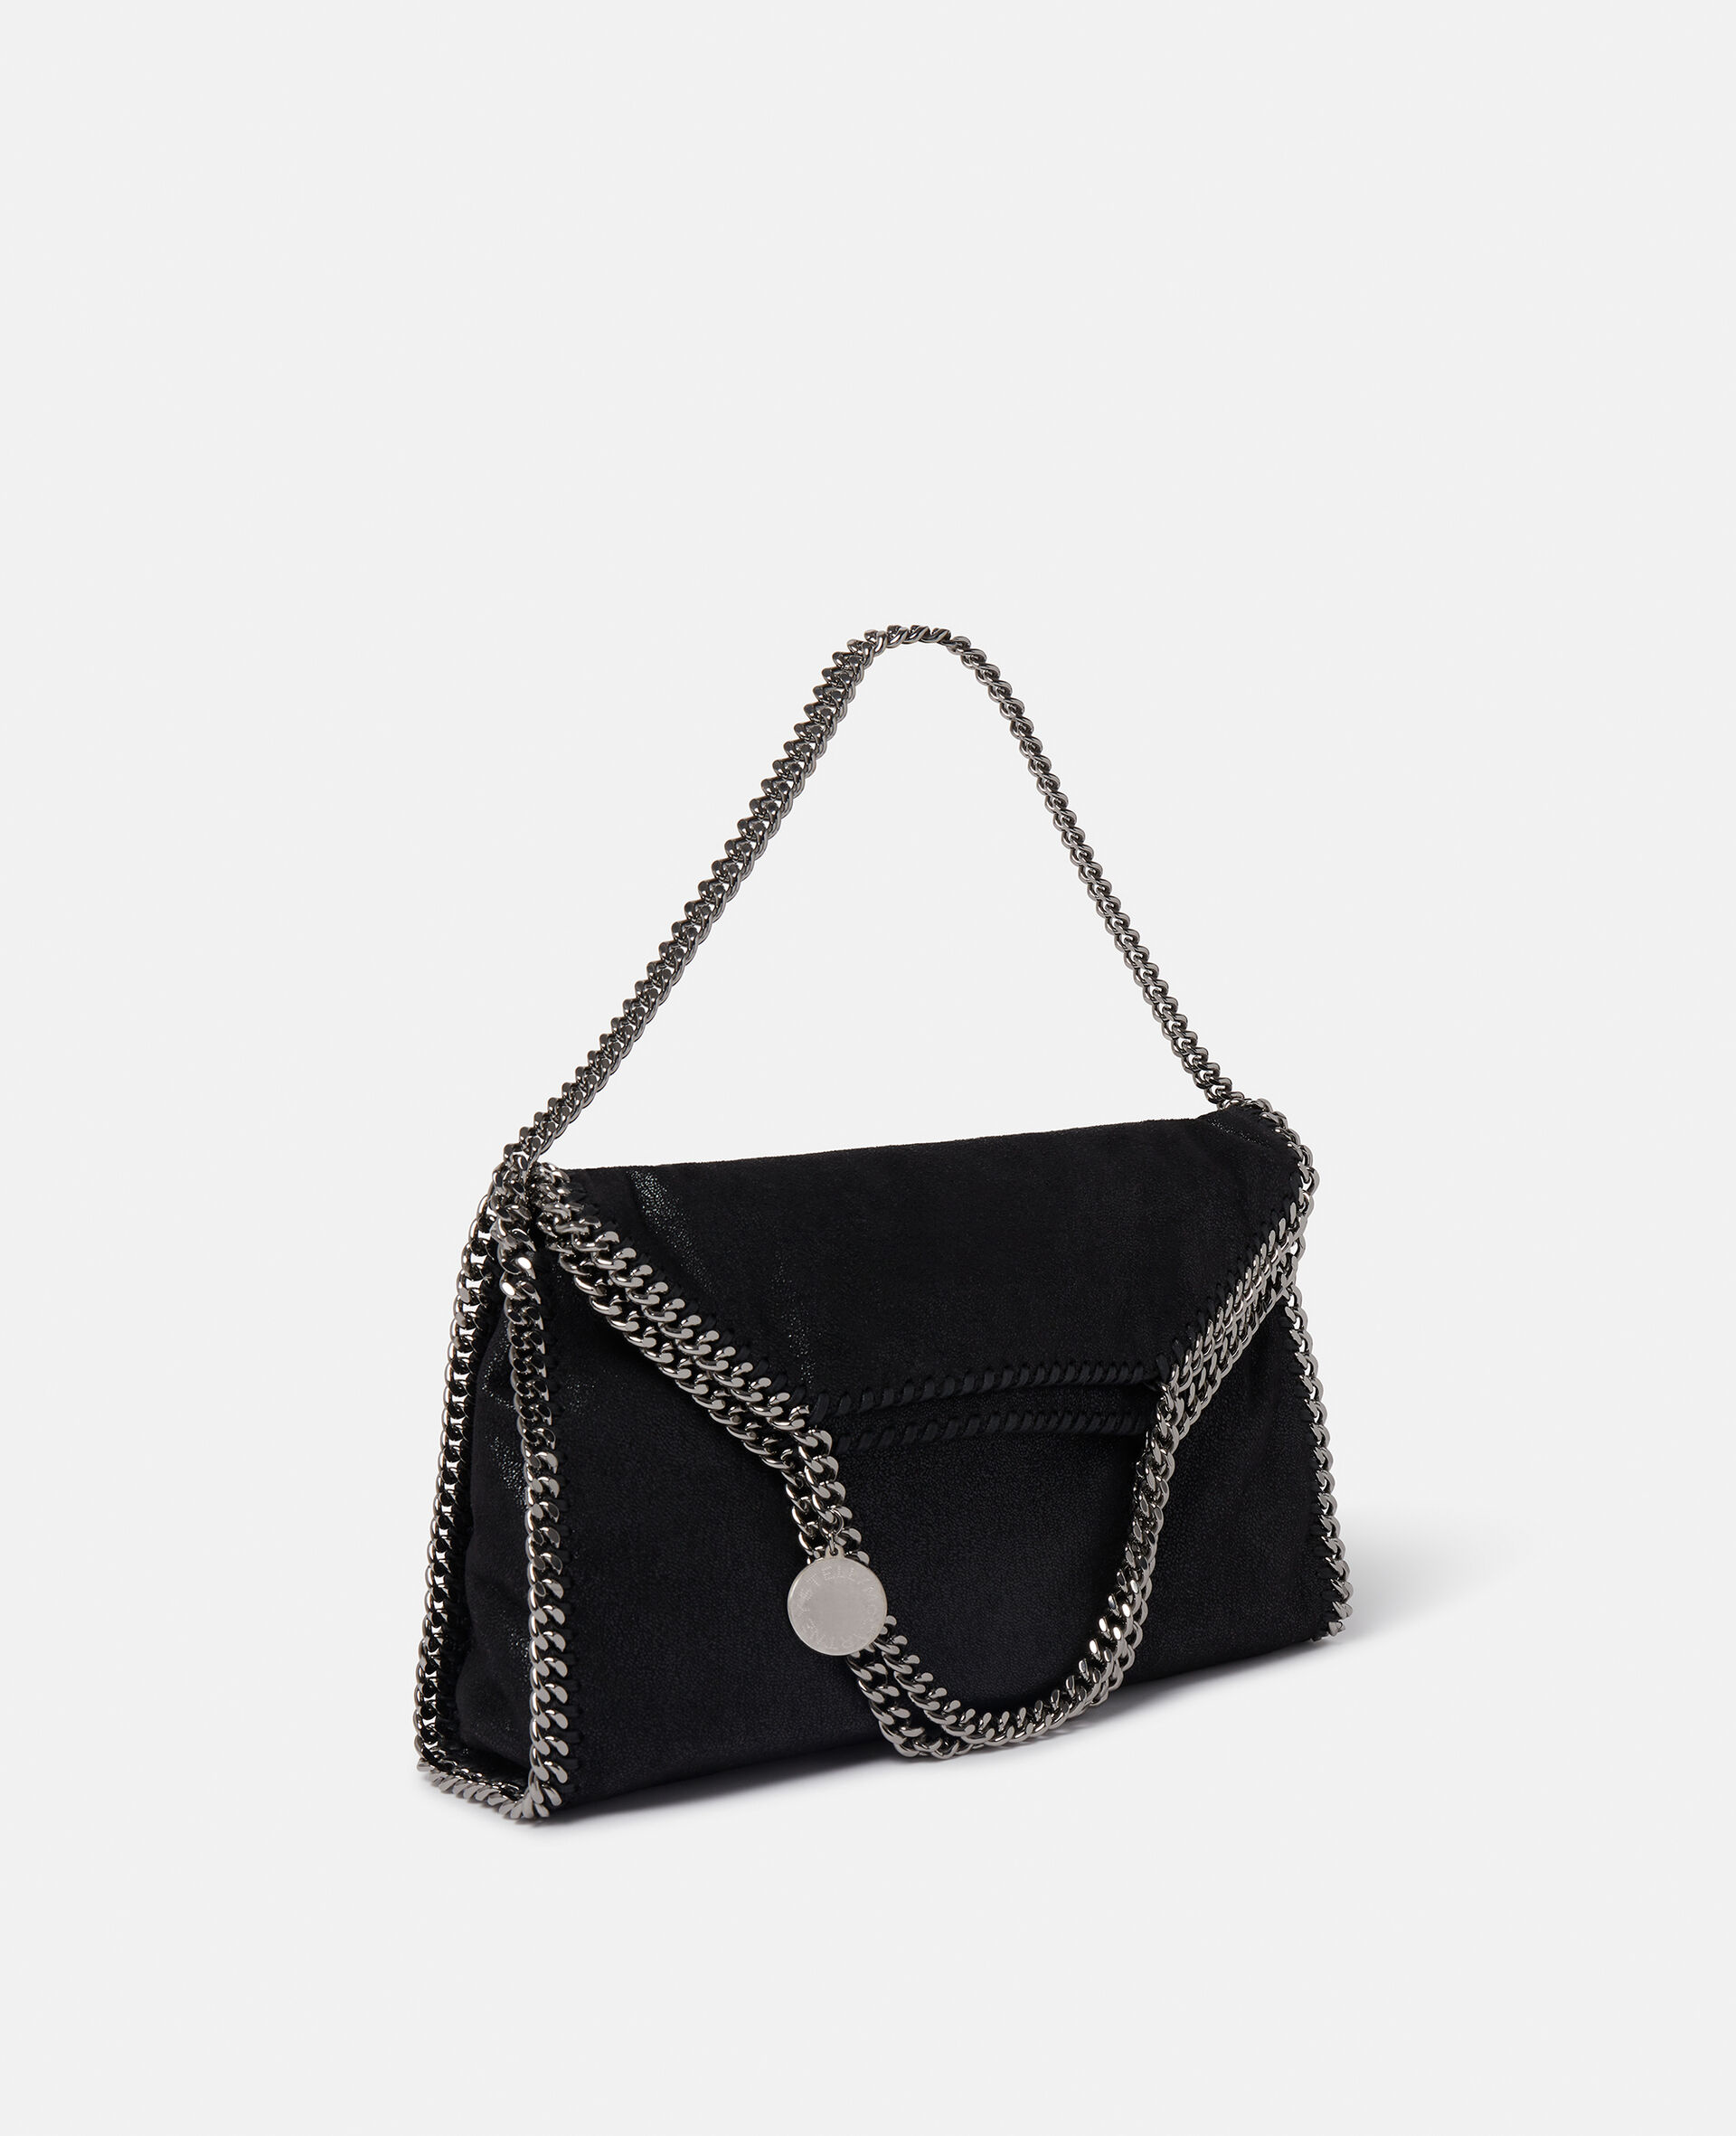 Stella McCartney Black Falabella Crossbody Bag